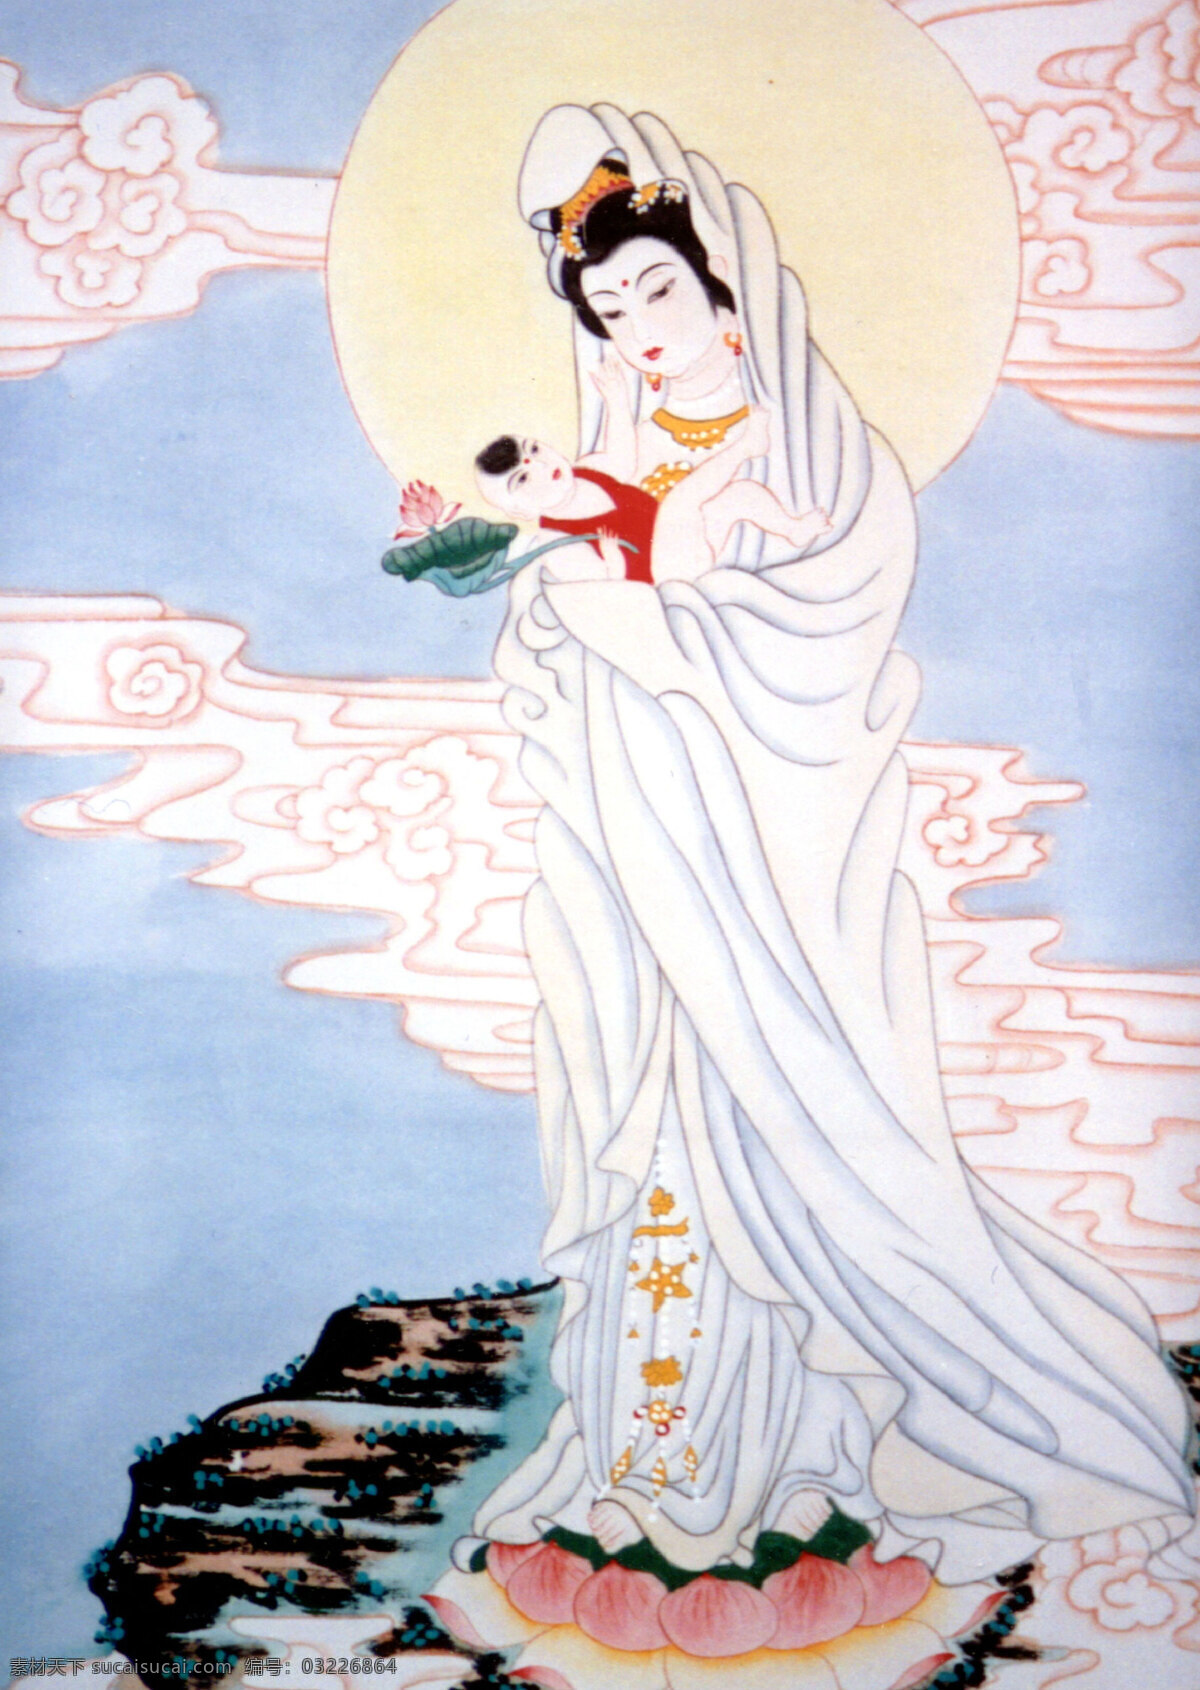 送子观音 神仙佛像 国画0038 国画 设计素材 中国画篇 书画美术 白色